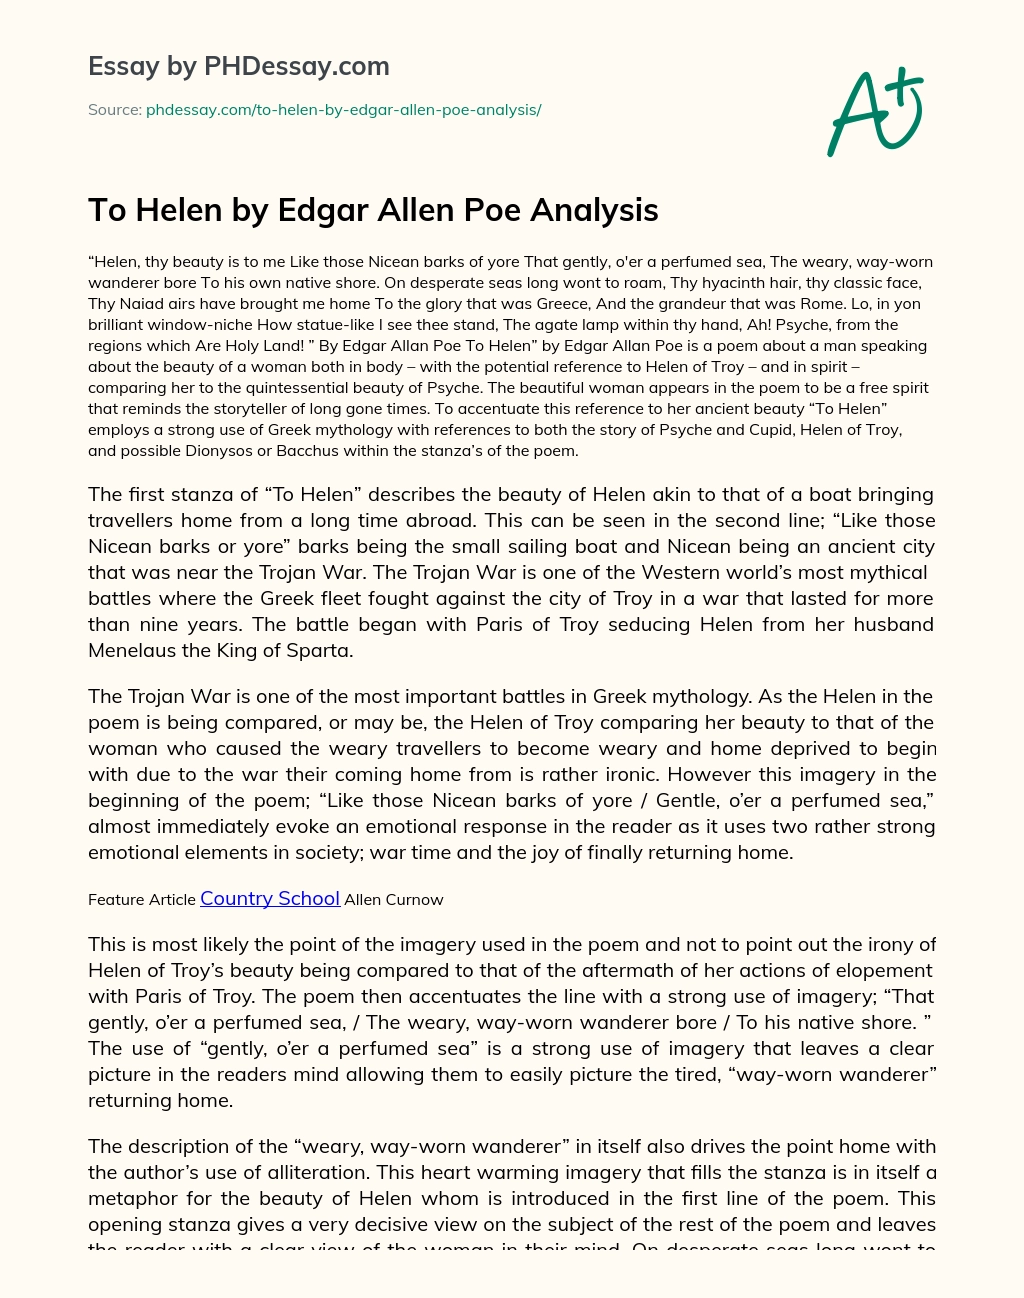 To Helen by Edgar Allen Poe Analysis essay